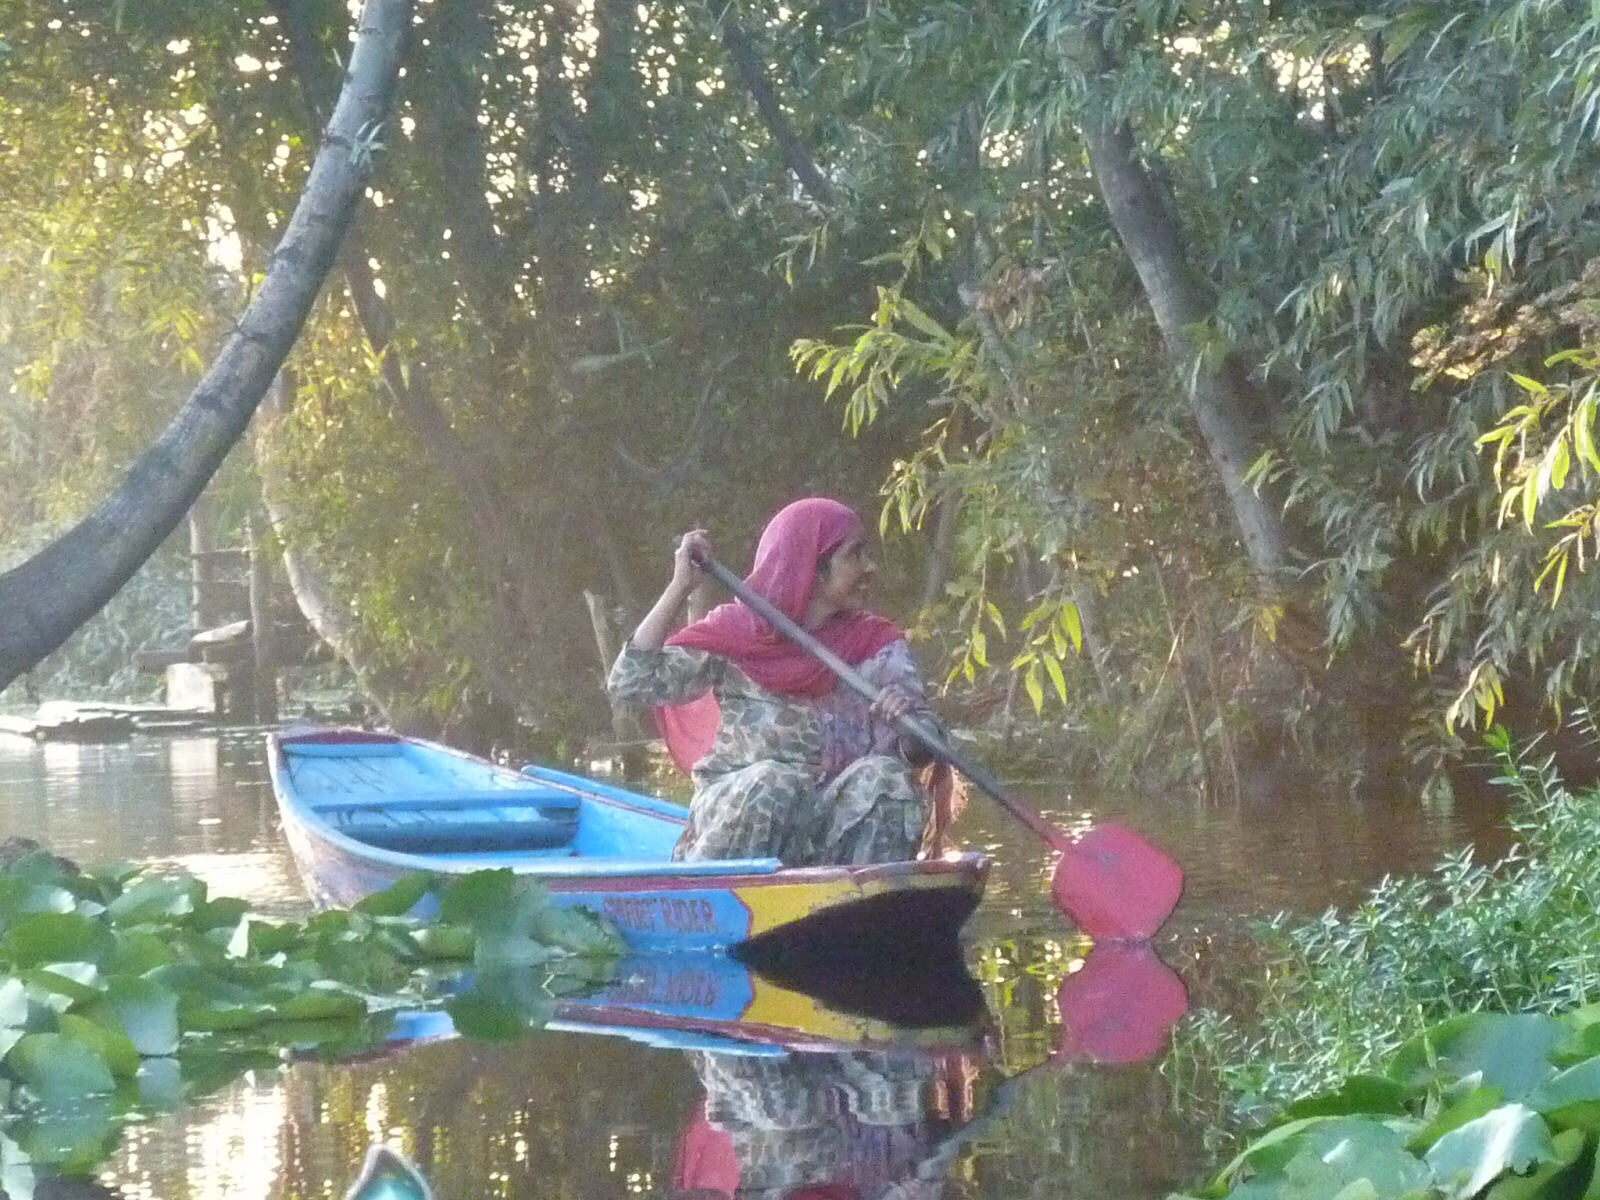 A canoe on the canal in Srinagar, Kashmir, India